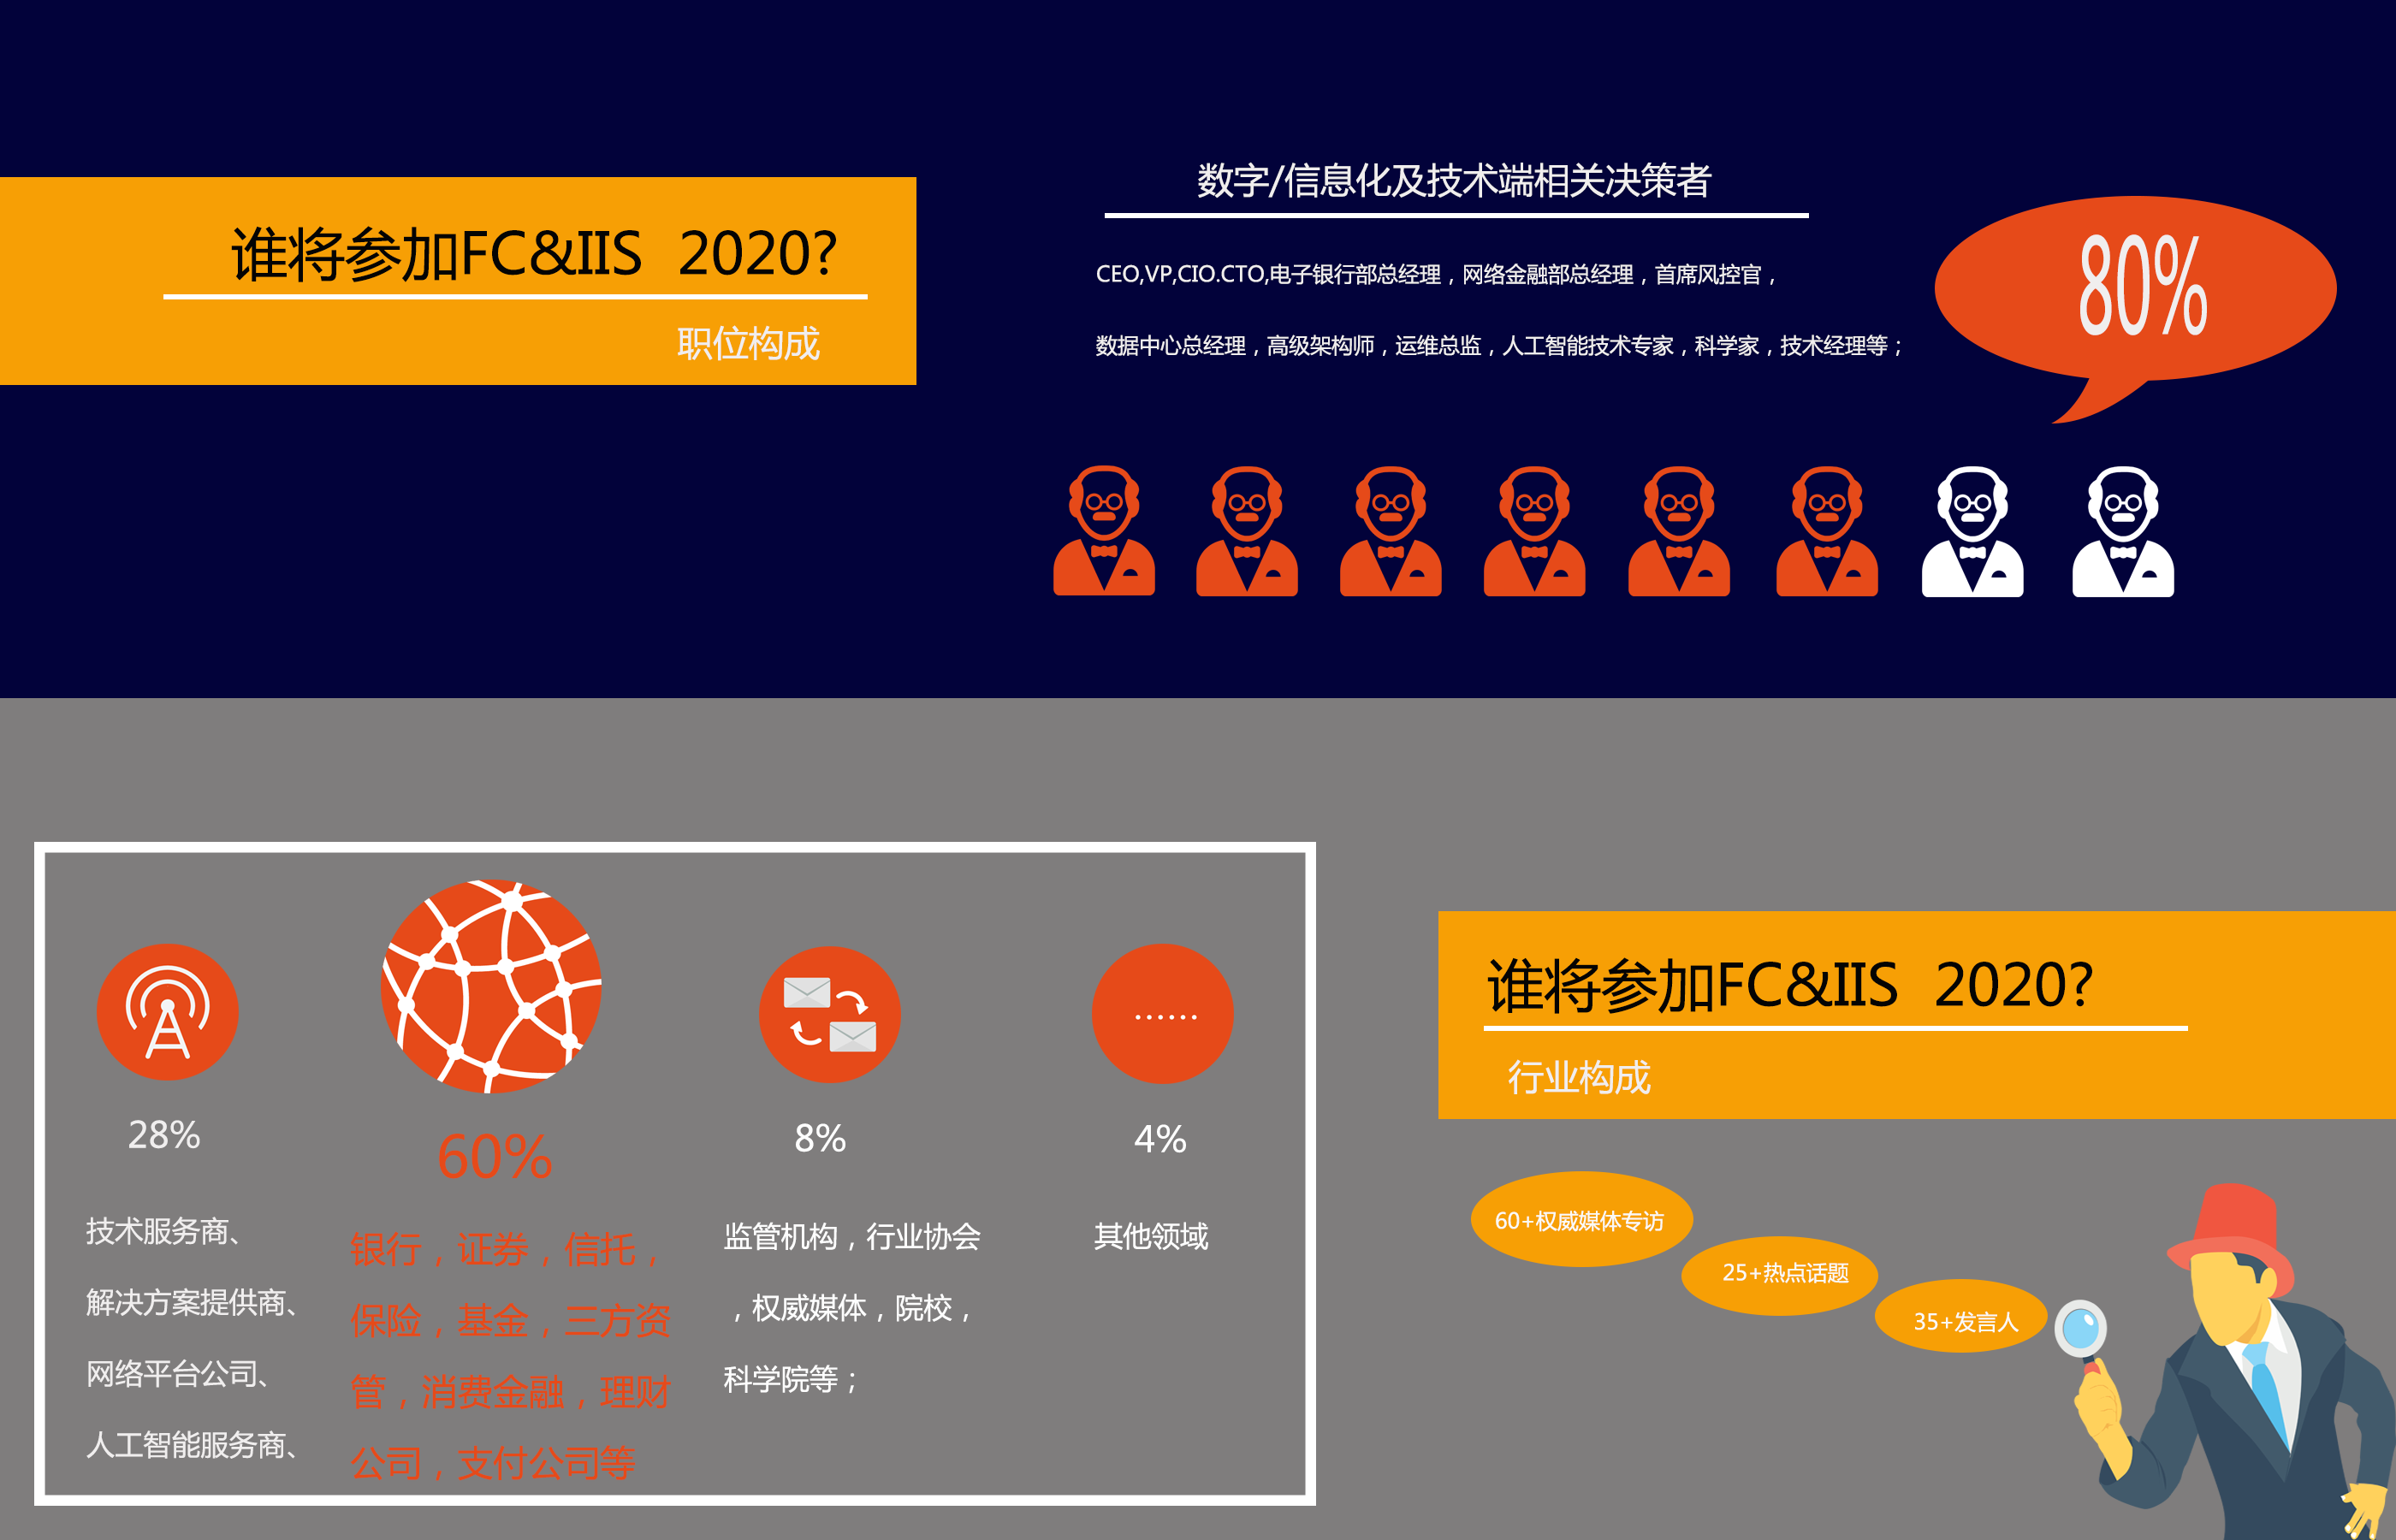 2020亚洲金融科技大会暨保险创新峰会（北京）